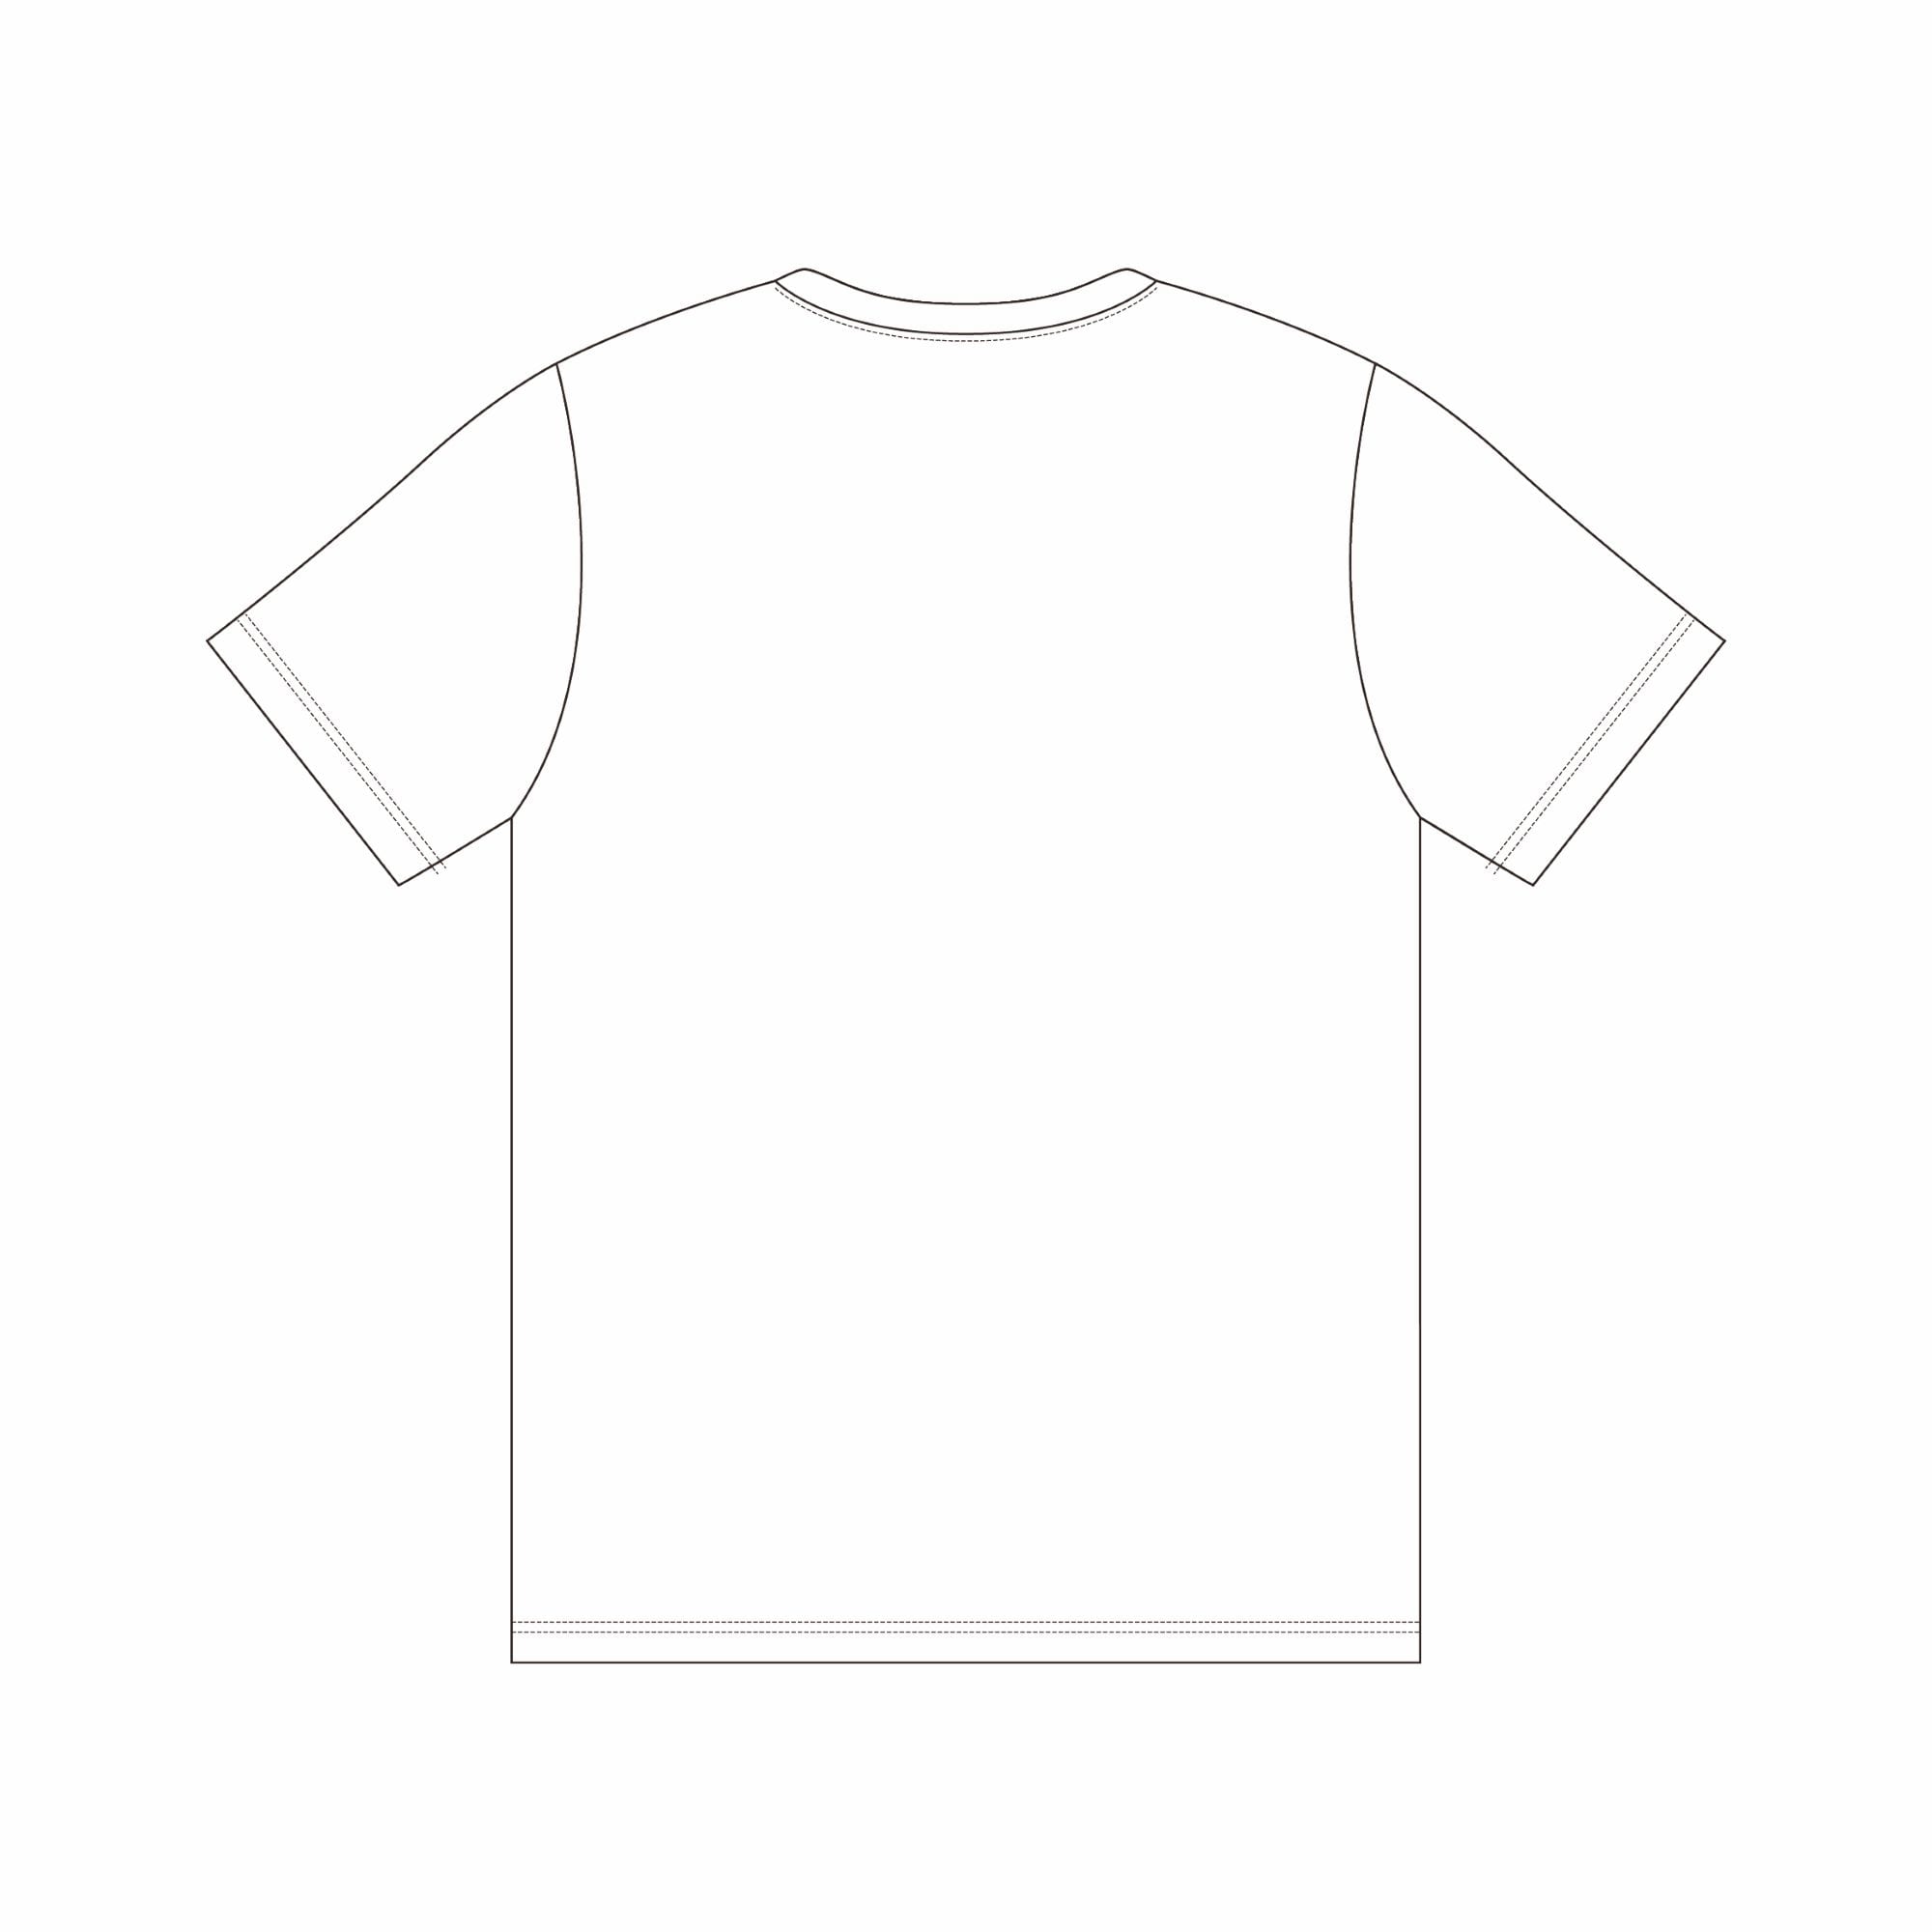 12.13 井上尚弥限定Tシャツ[ユニセックス]|32JA2X11|ウエア|ボクシング ...